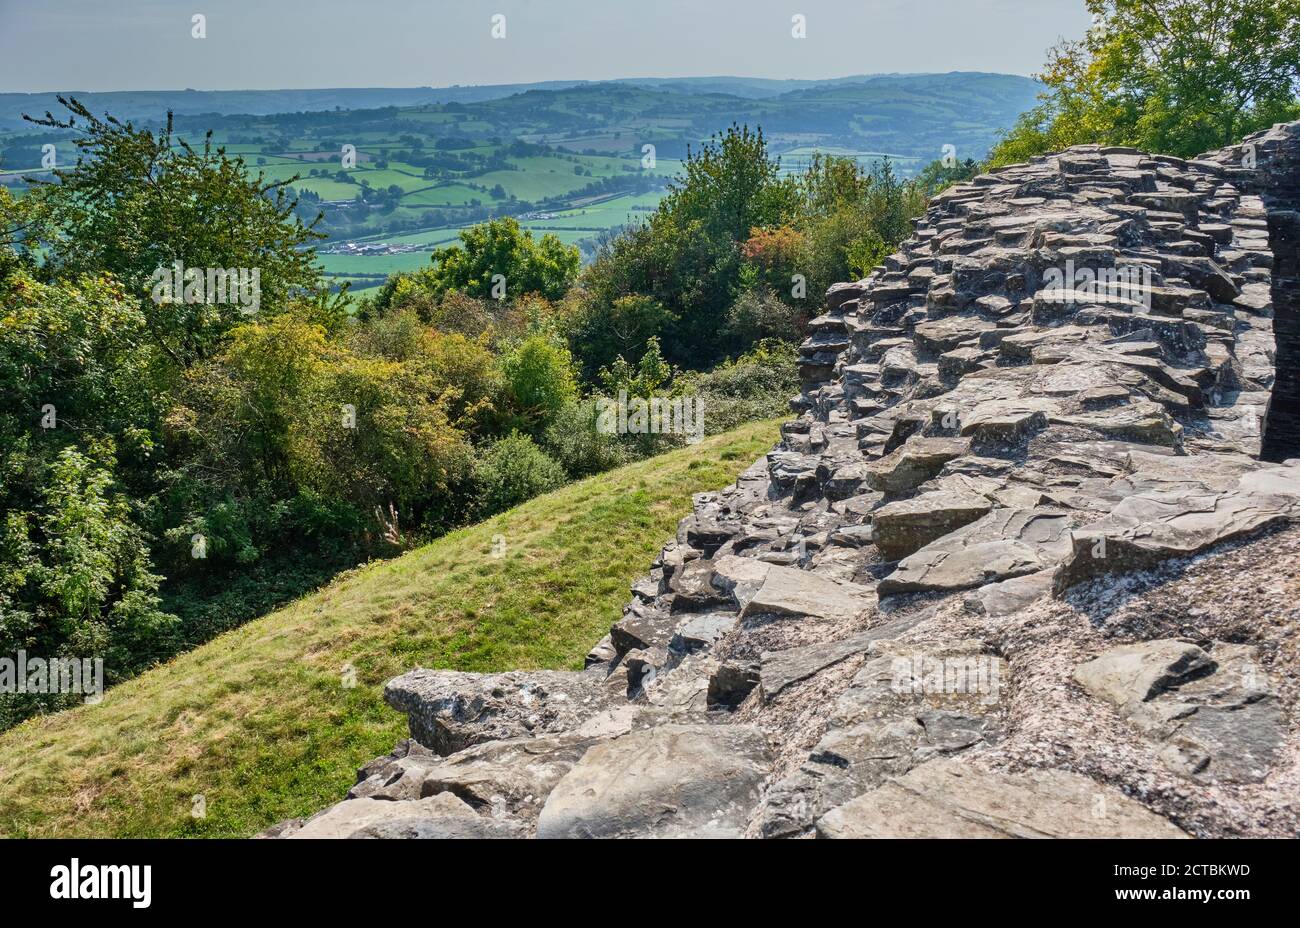 Dolforwyn Castle near Newtown, Powys, Wales Stock Photo